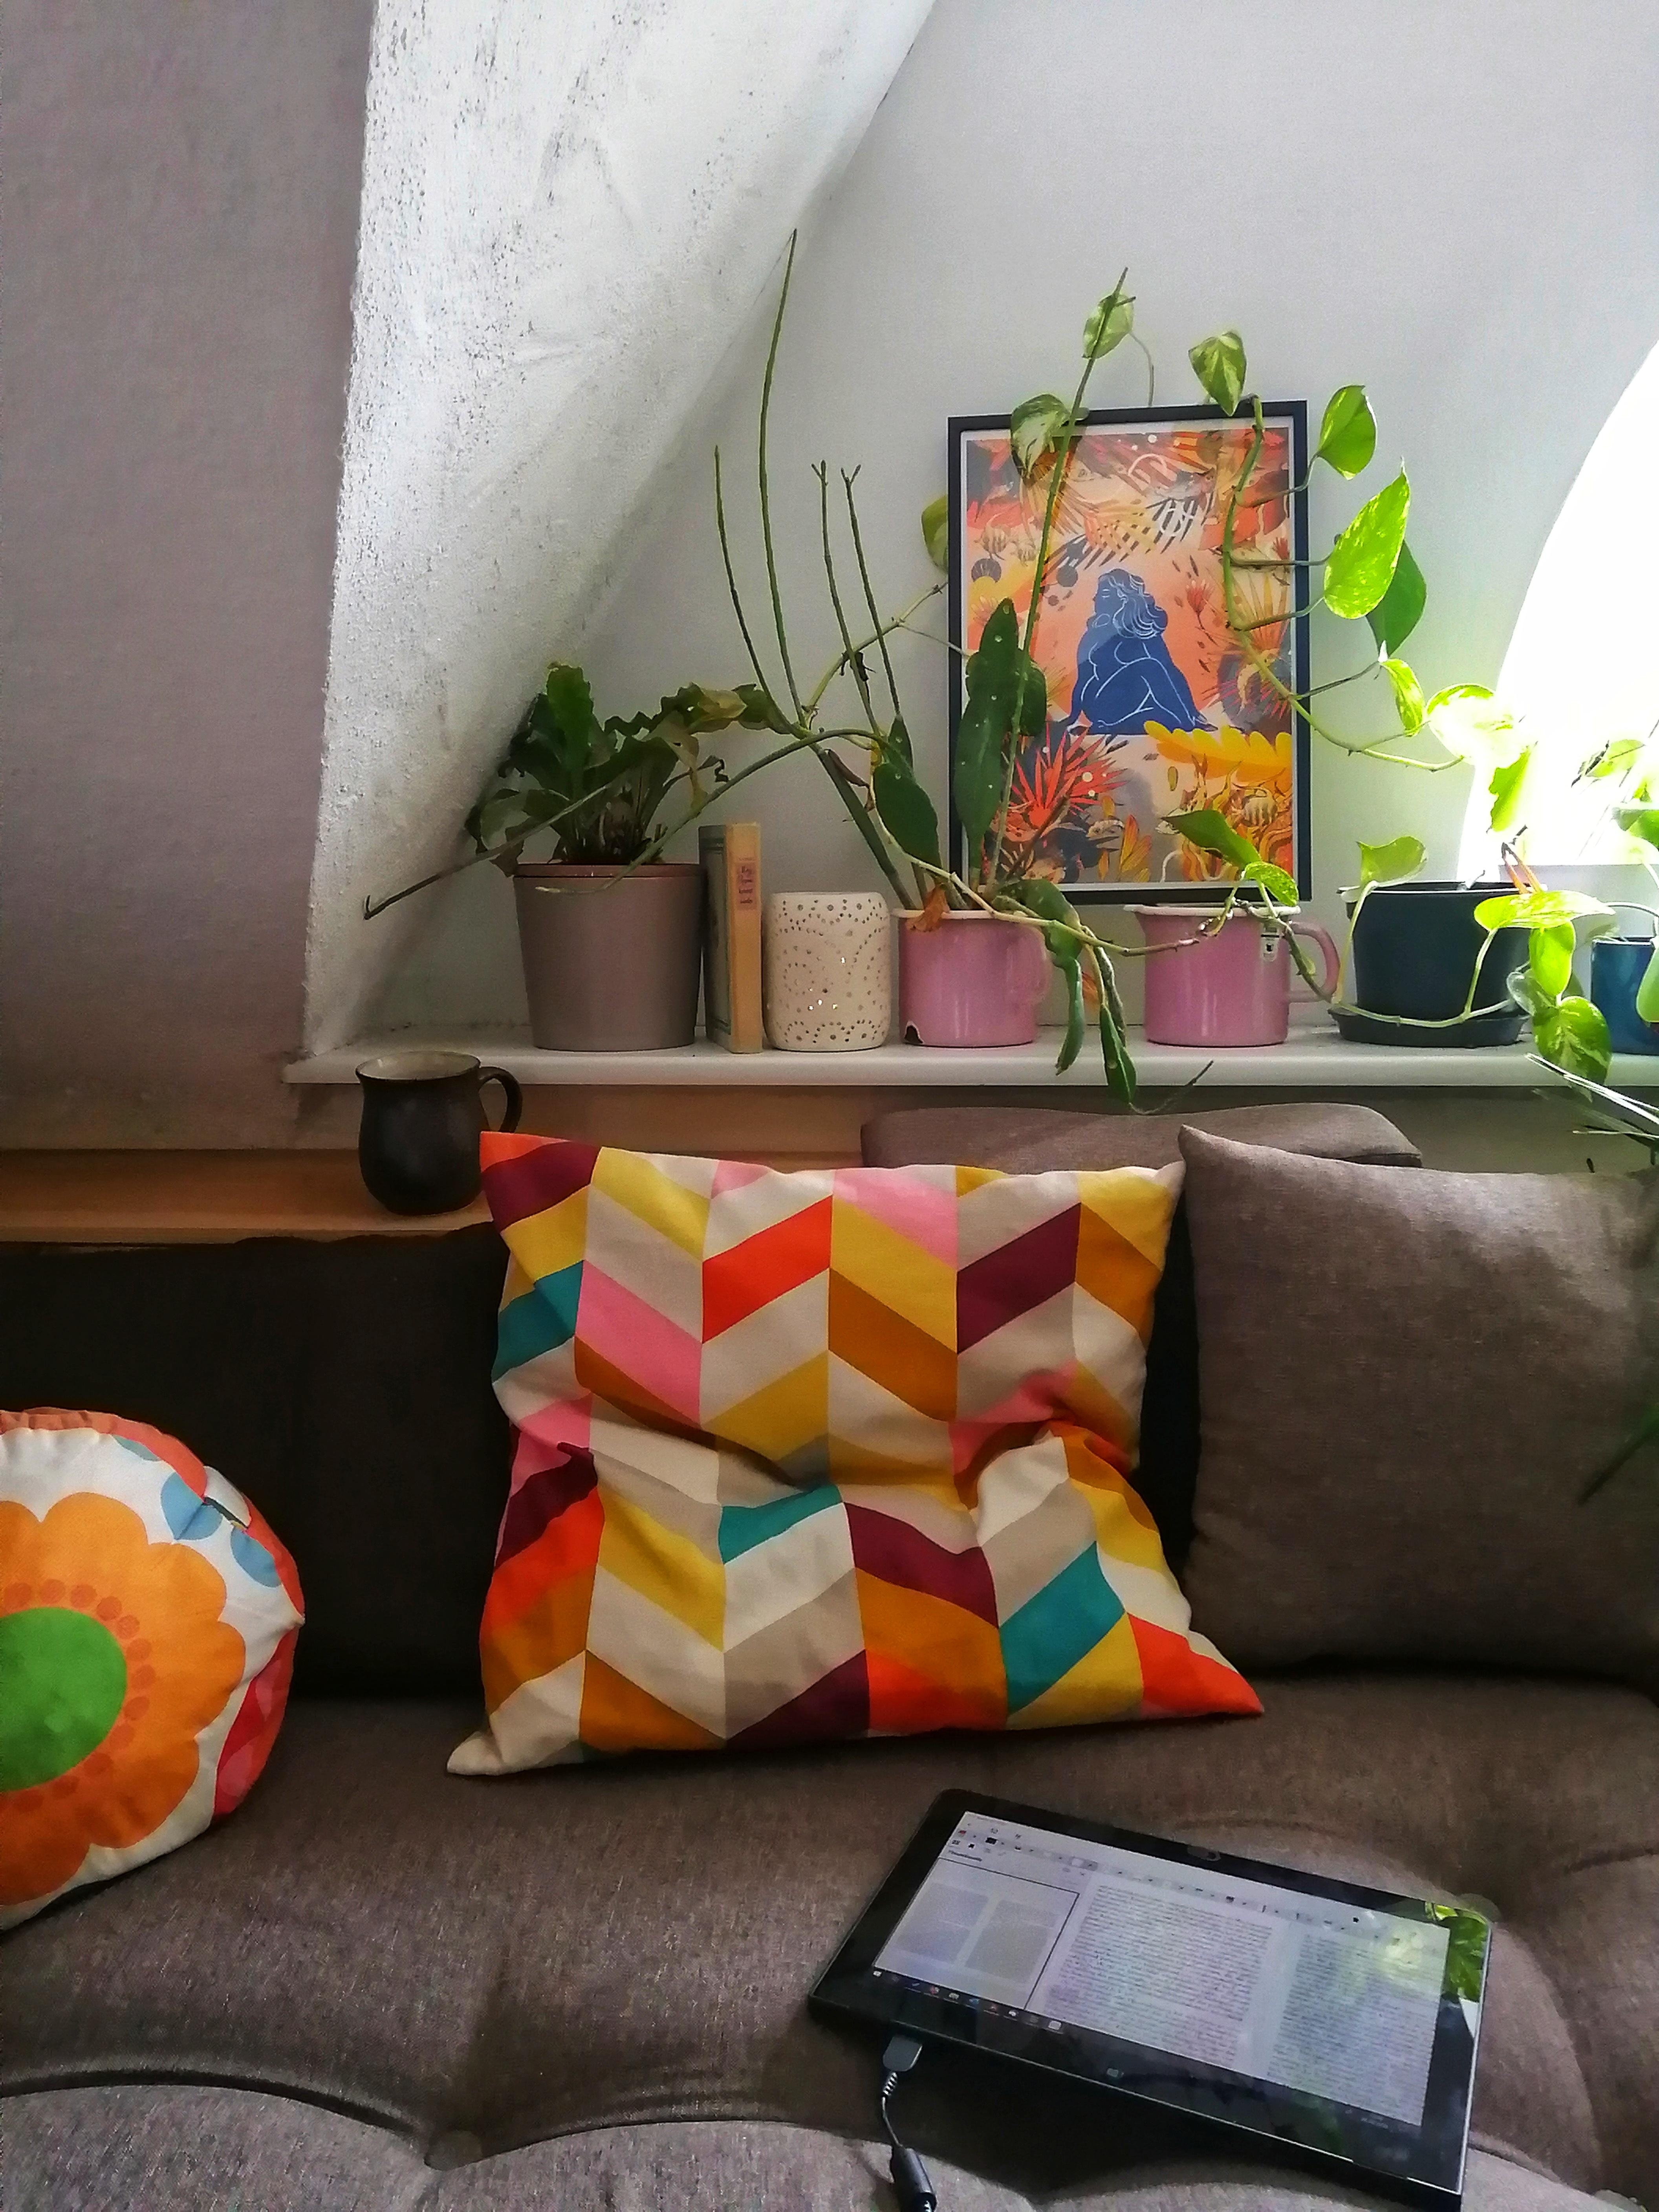 Kuscheliger Recherche-Samstag.
#lieblingsecke #wohnzimmer #couch #altbau #art #urbanjungle